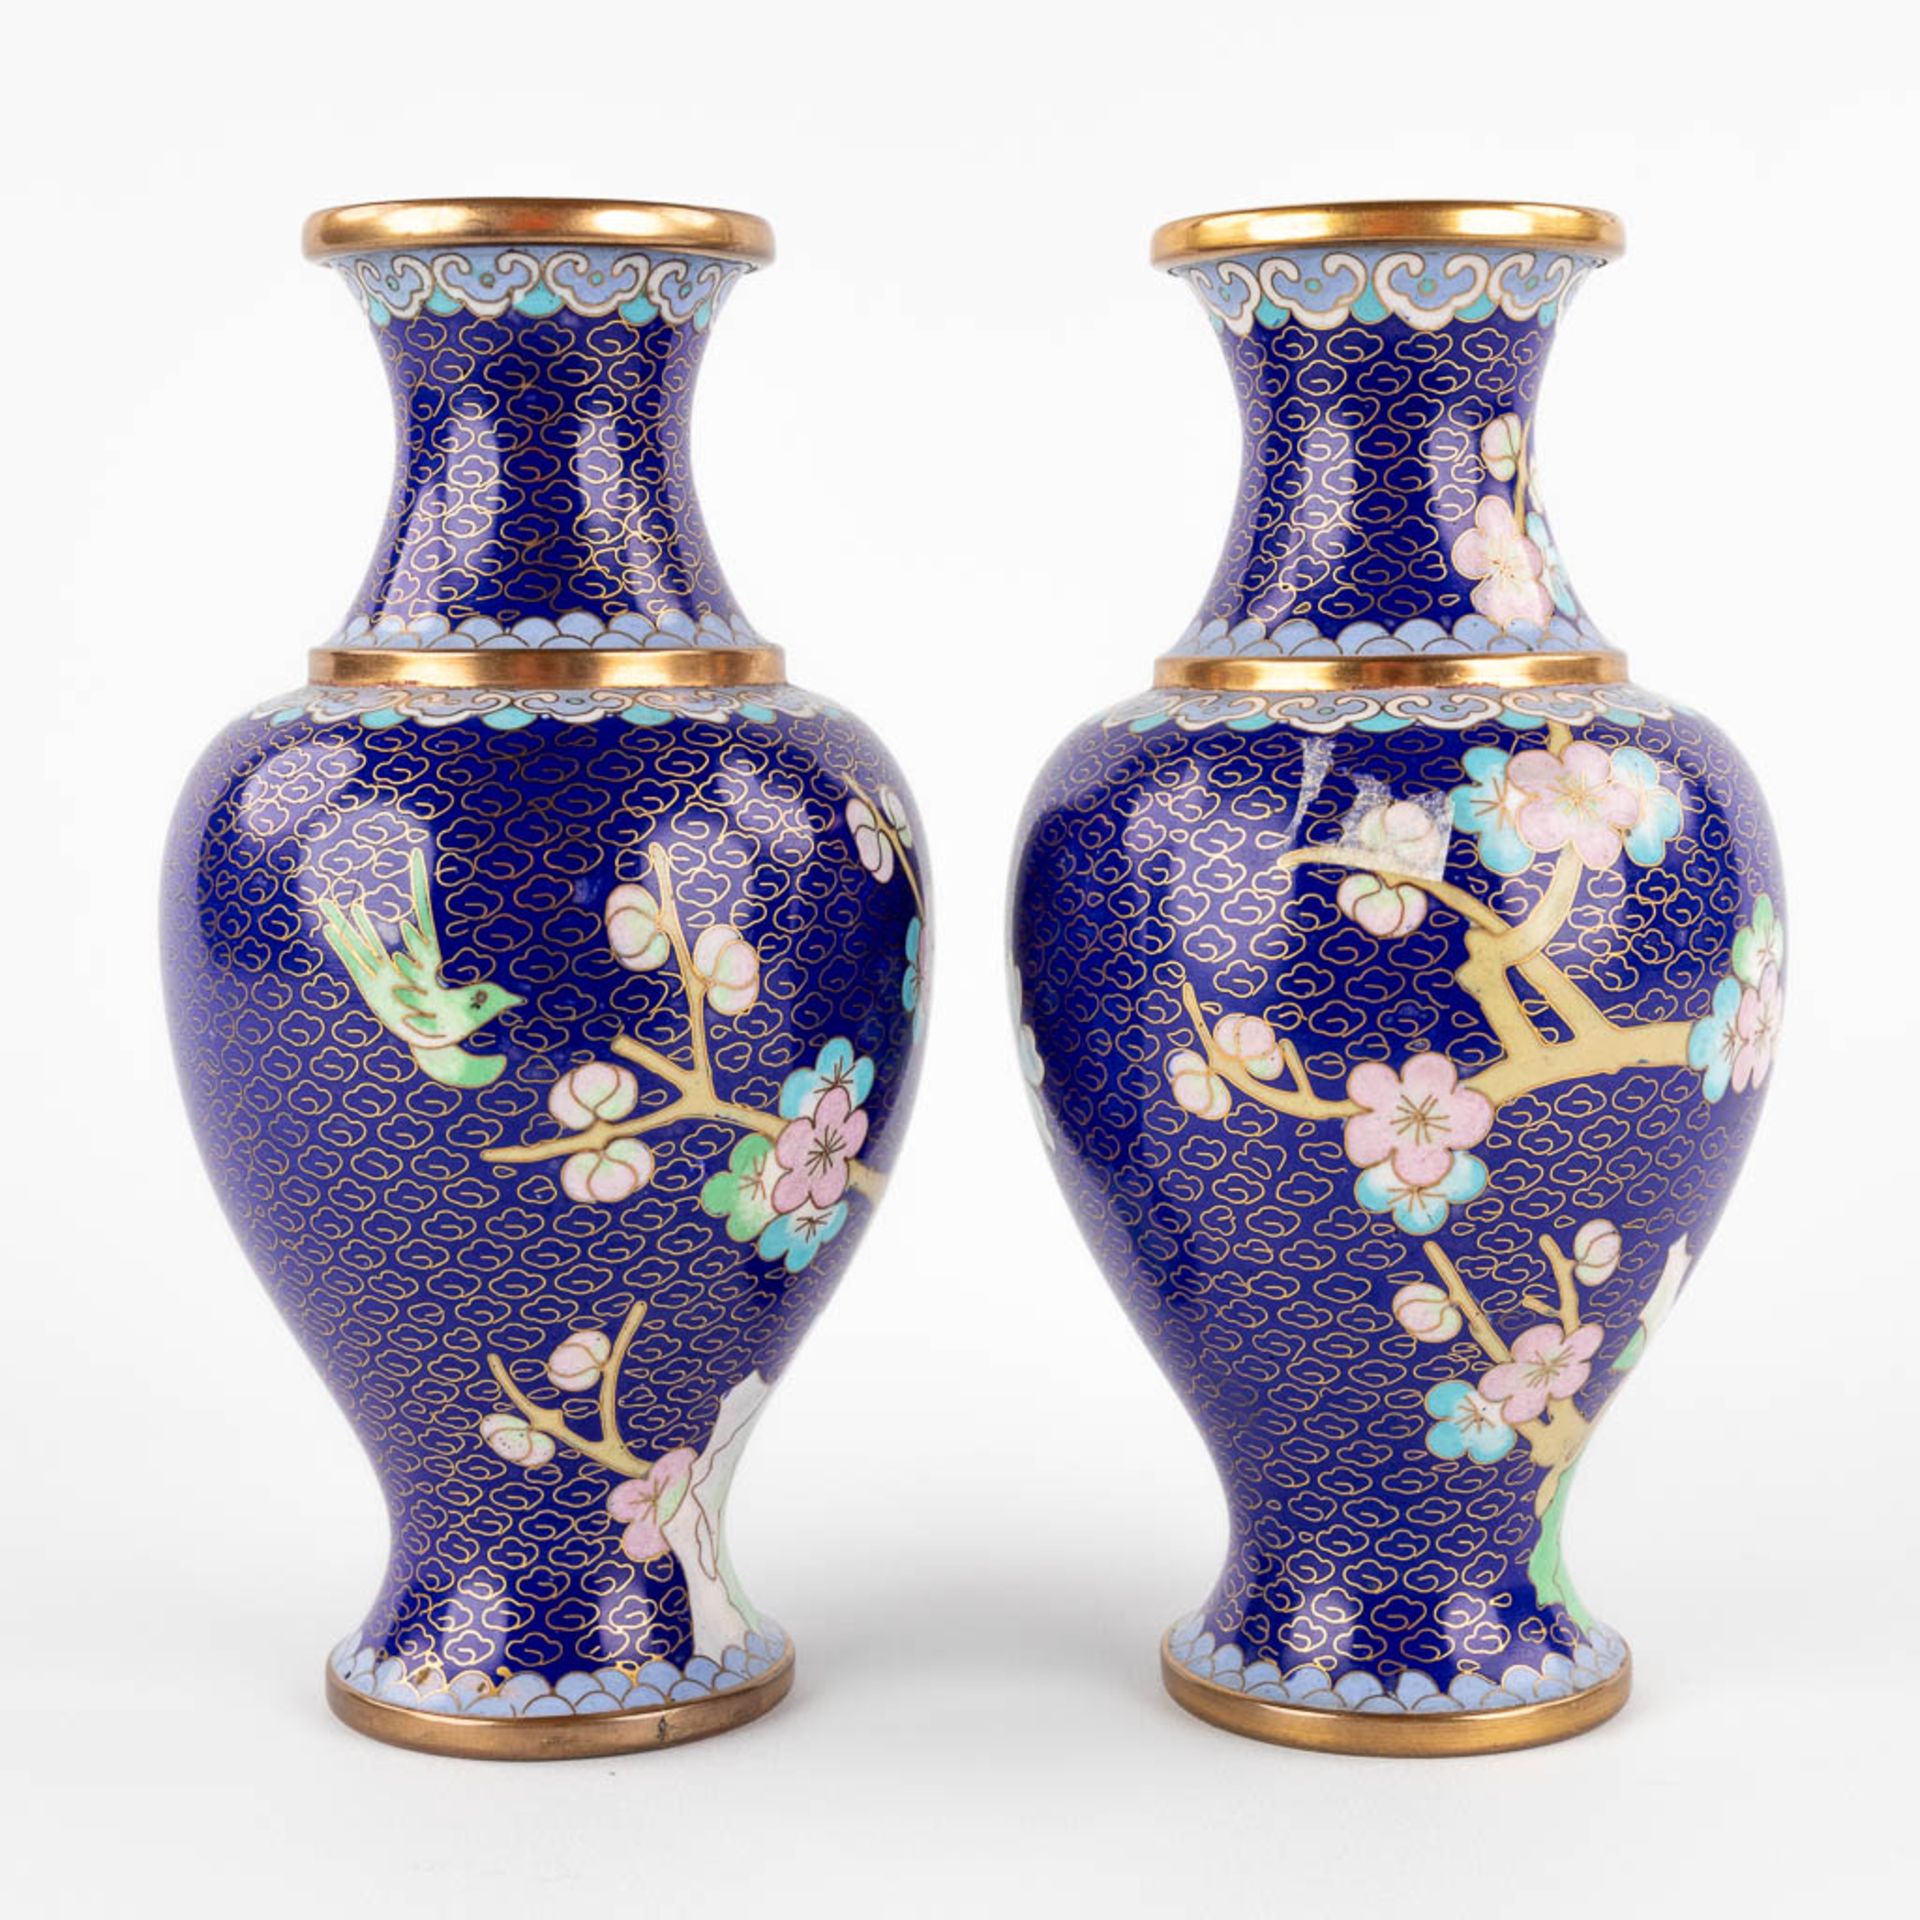 Five Oriental vases, cloisonné bronze. 20th C. (H:25 cm) - Image 12 of 27